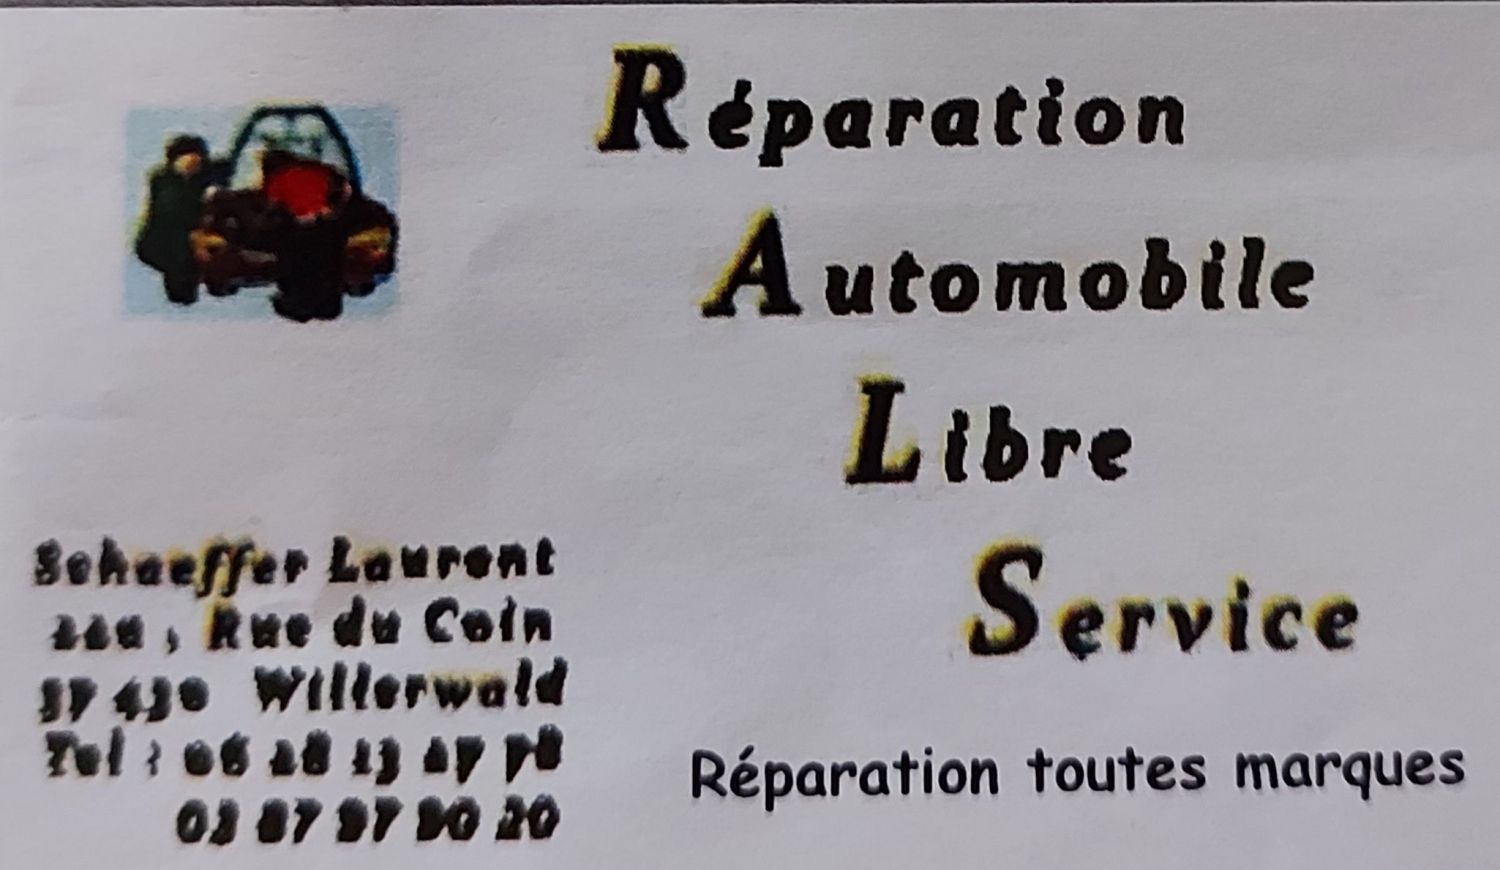 Réparation Automobile Libre Service